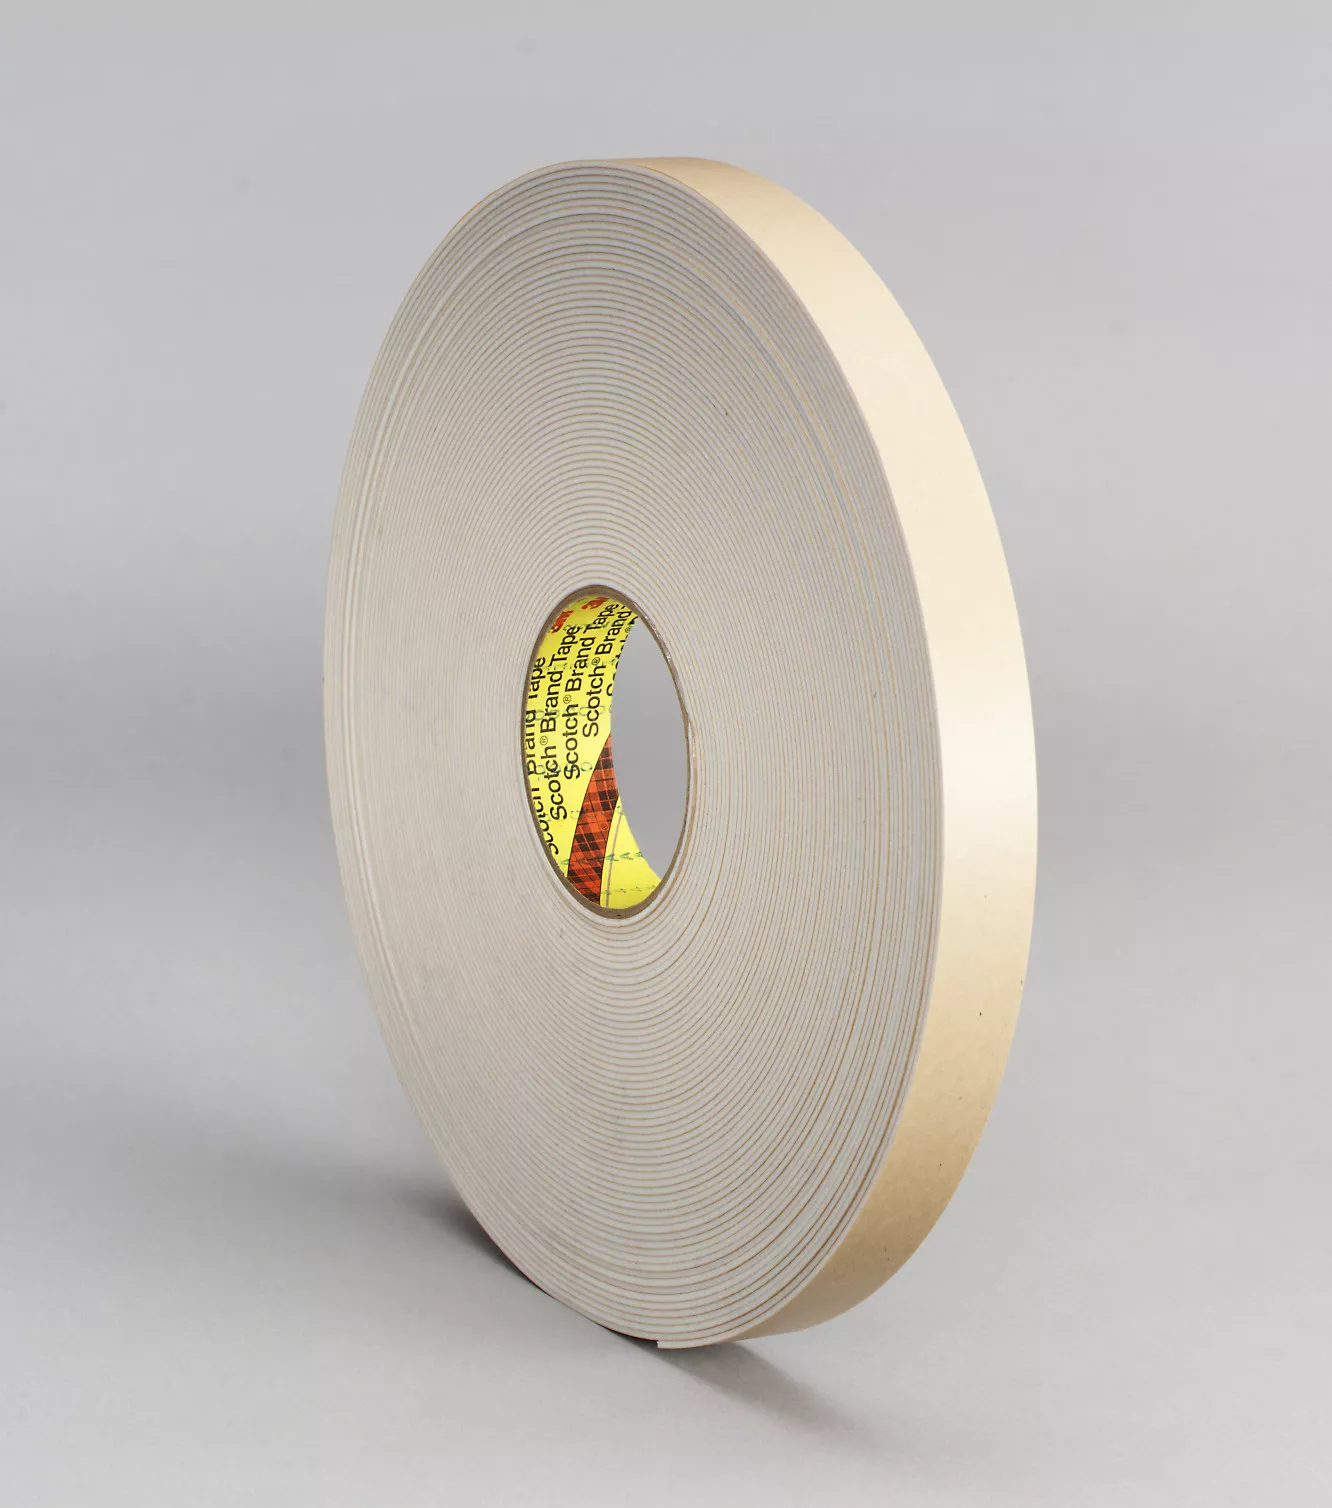 3M™ Double Coated Polyethylene Foam Tape 4496B, Black, 48 in x 36 yd, 62
mil, 1 Roll/Case